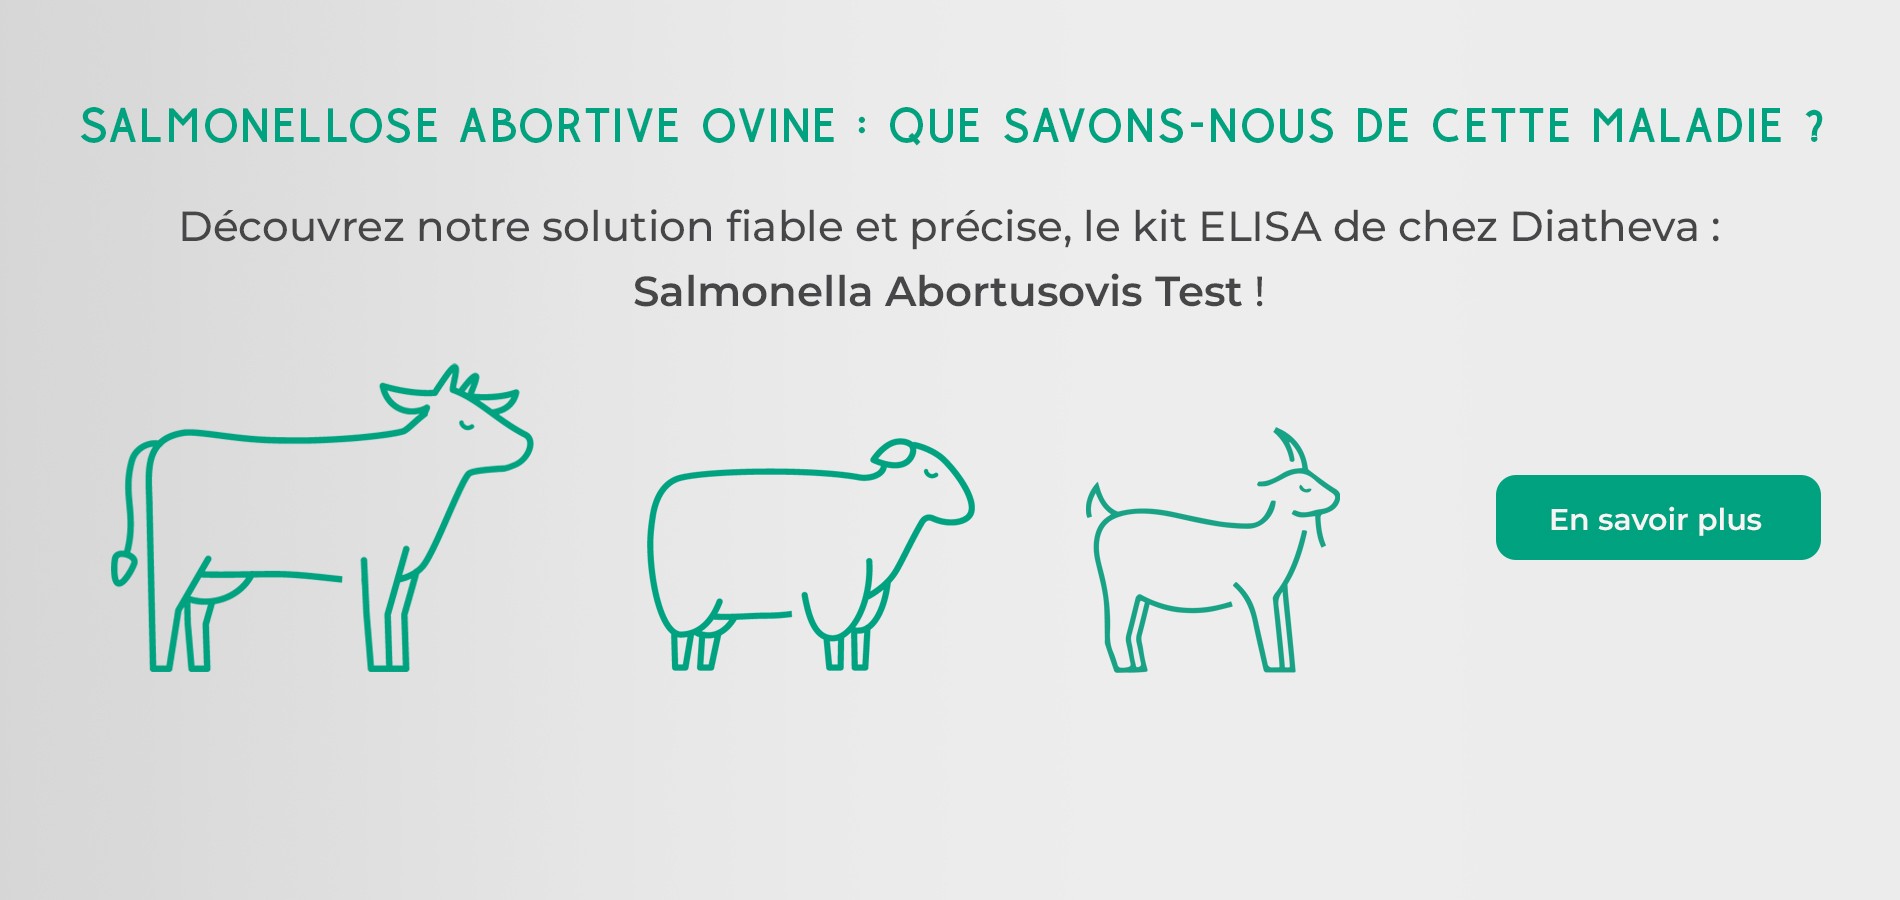 Découvrez notre solution fiable et précise, le kit ELISA de chez Diatheva : Salmonella Abortusovis Test